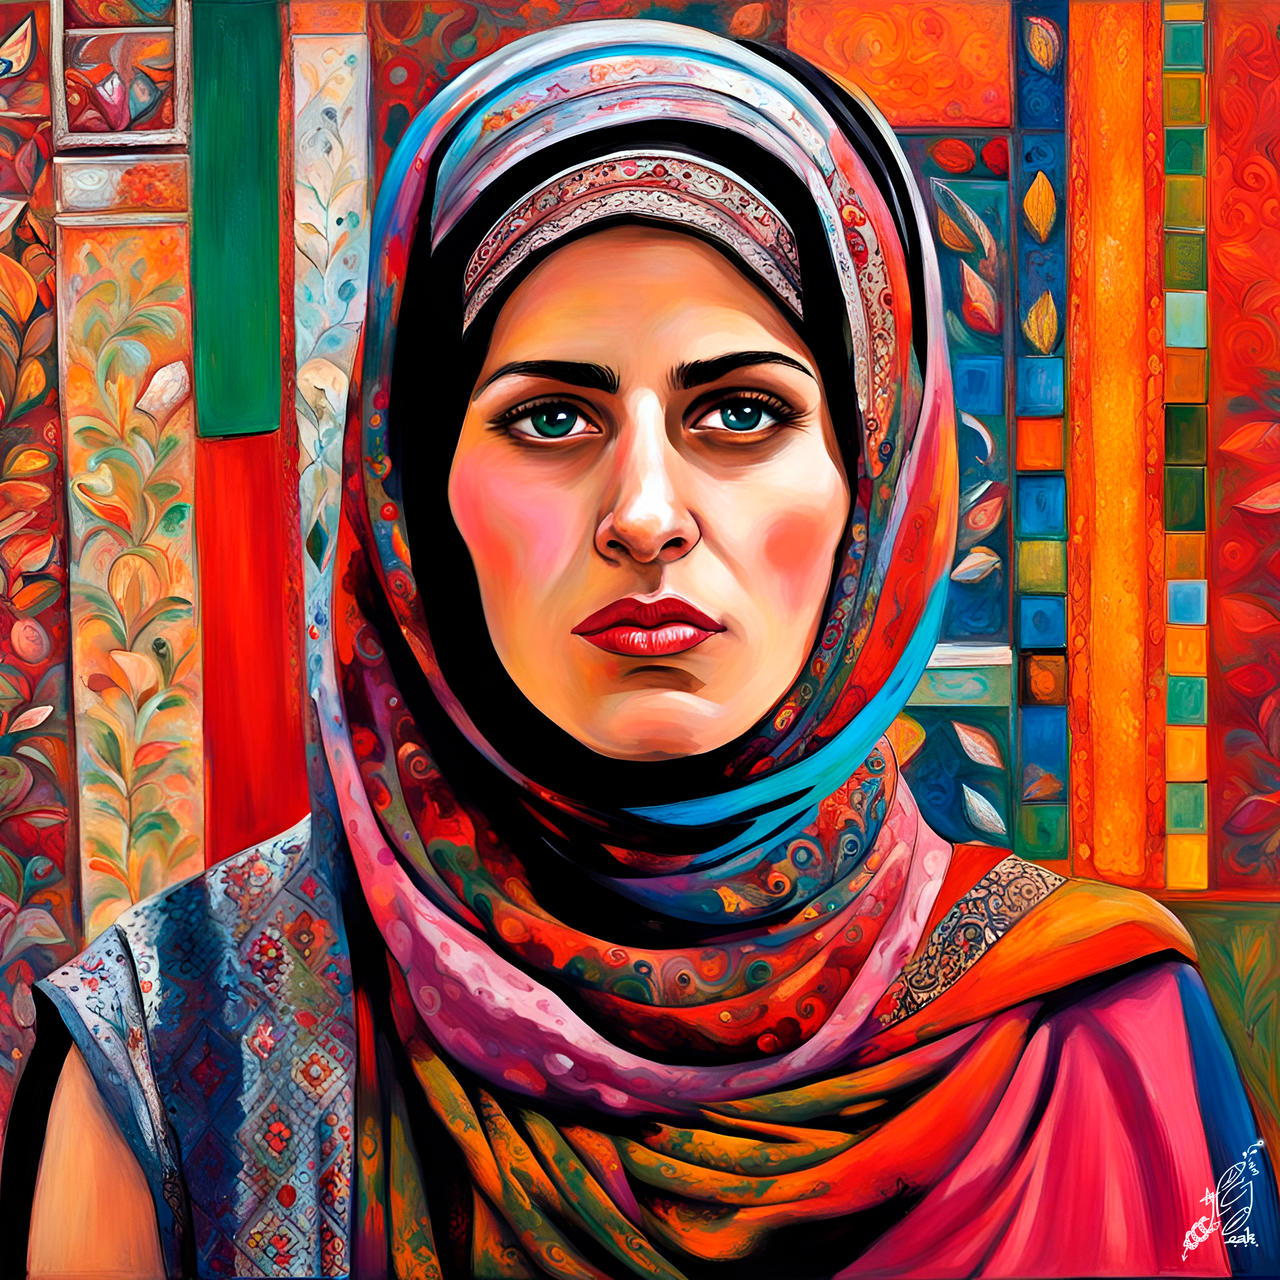 Palestinian woman by ElAbueloKraken on DeviantArt